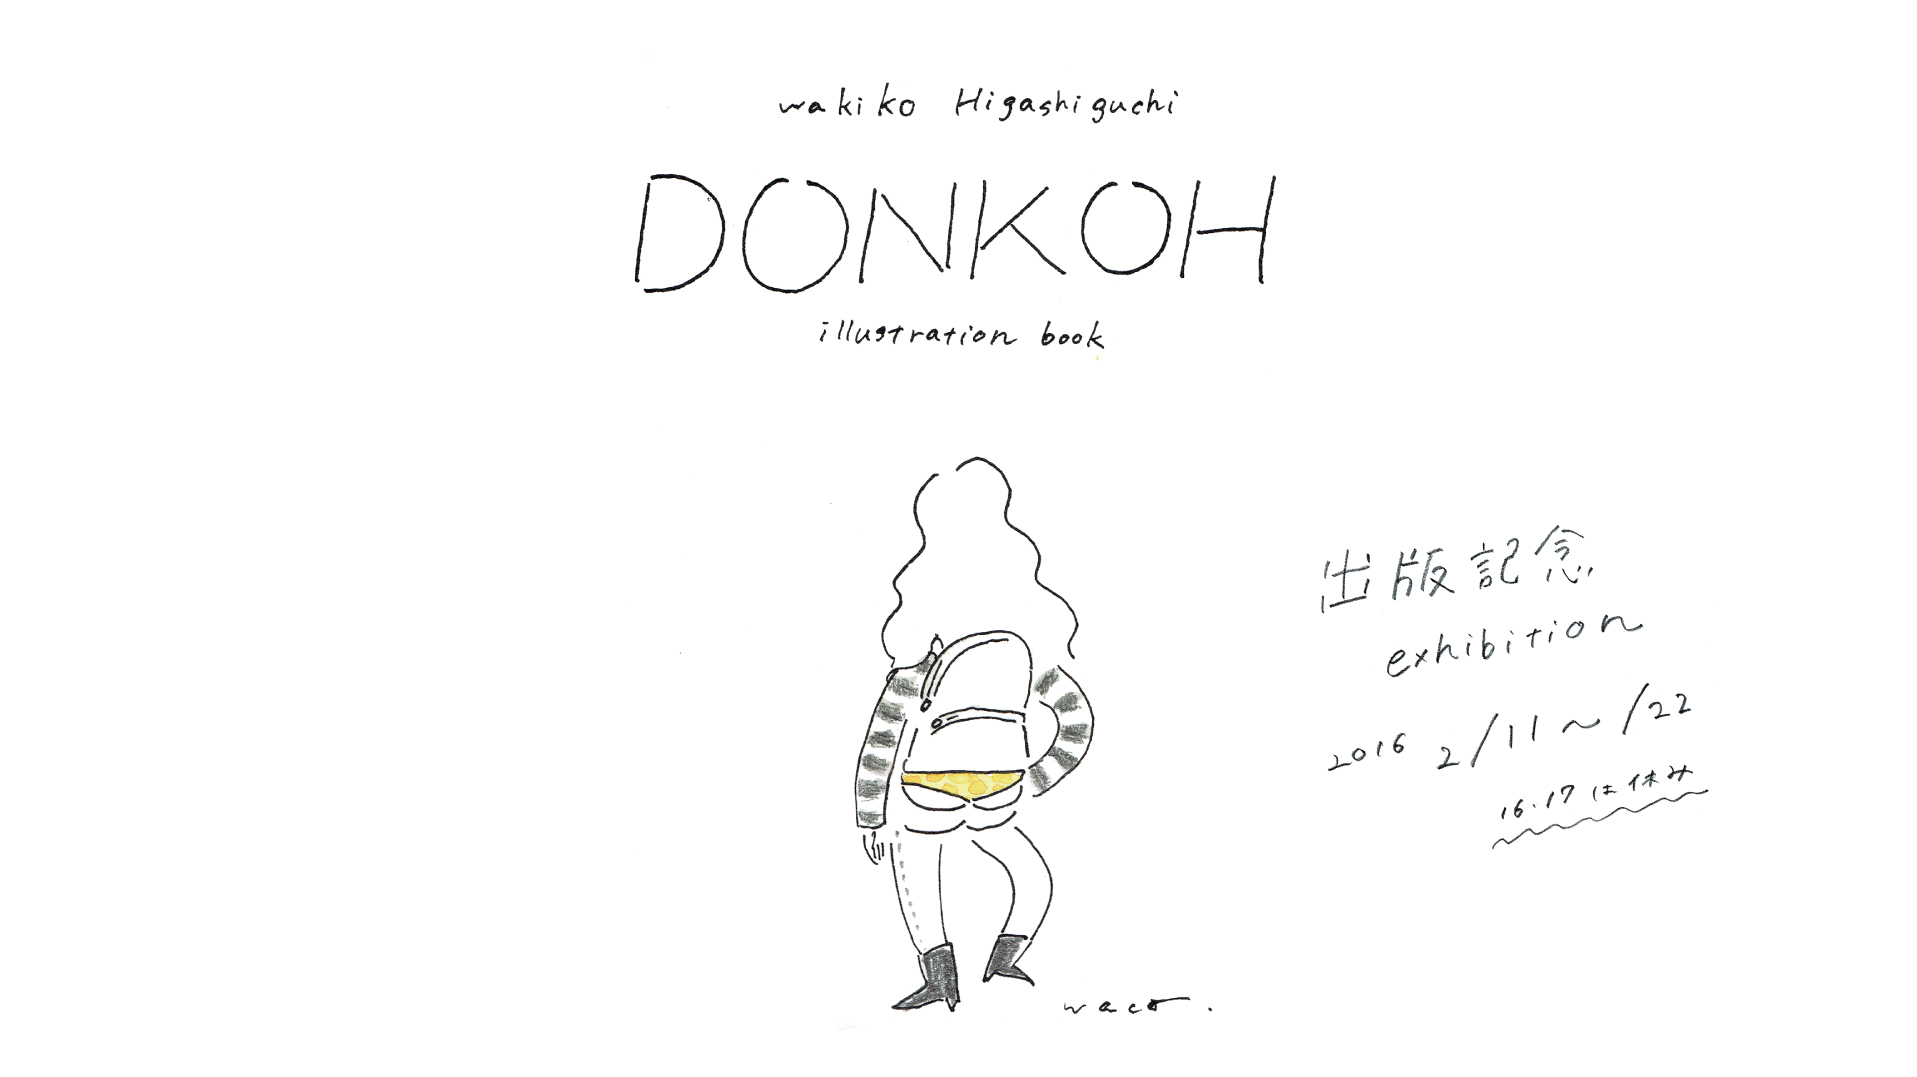 Wakiko Higashiguchi 「DONKOH」出版記念exhibition